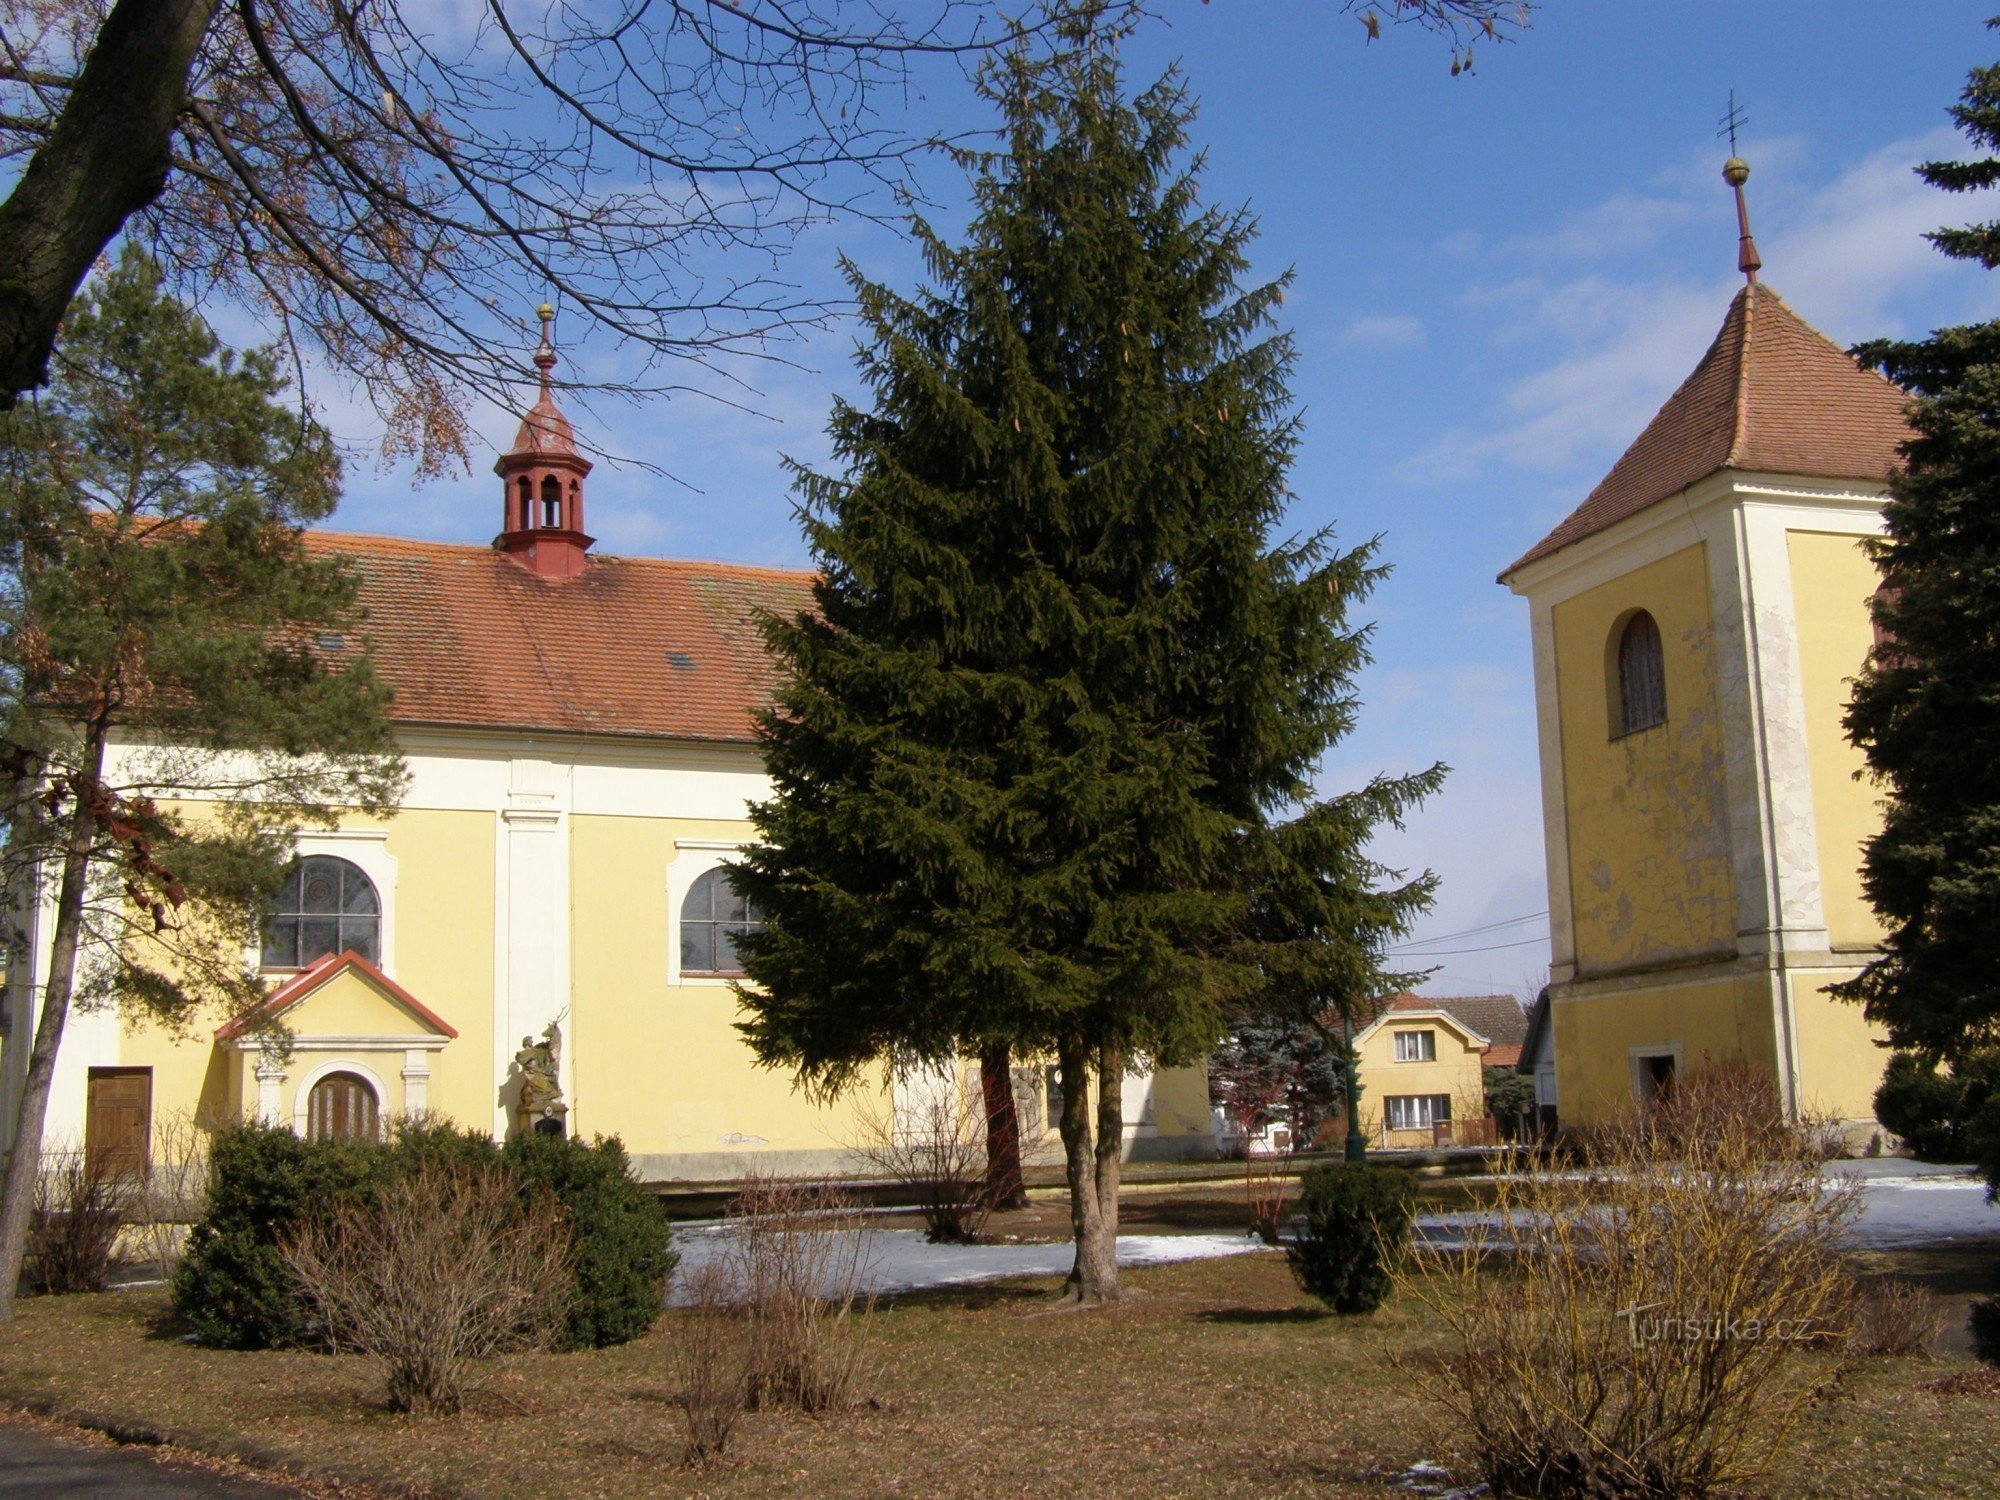 Lovčice - Kyrkan St. Bartolomeus med klockstapeln